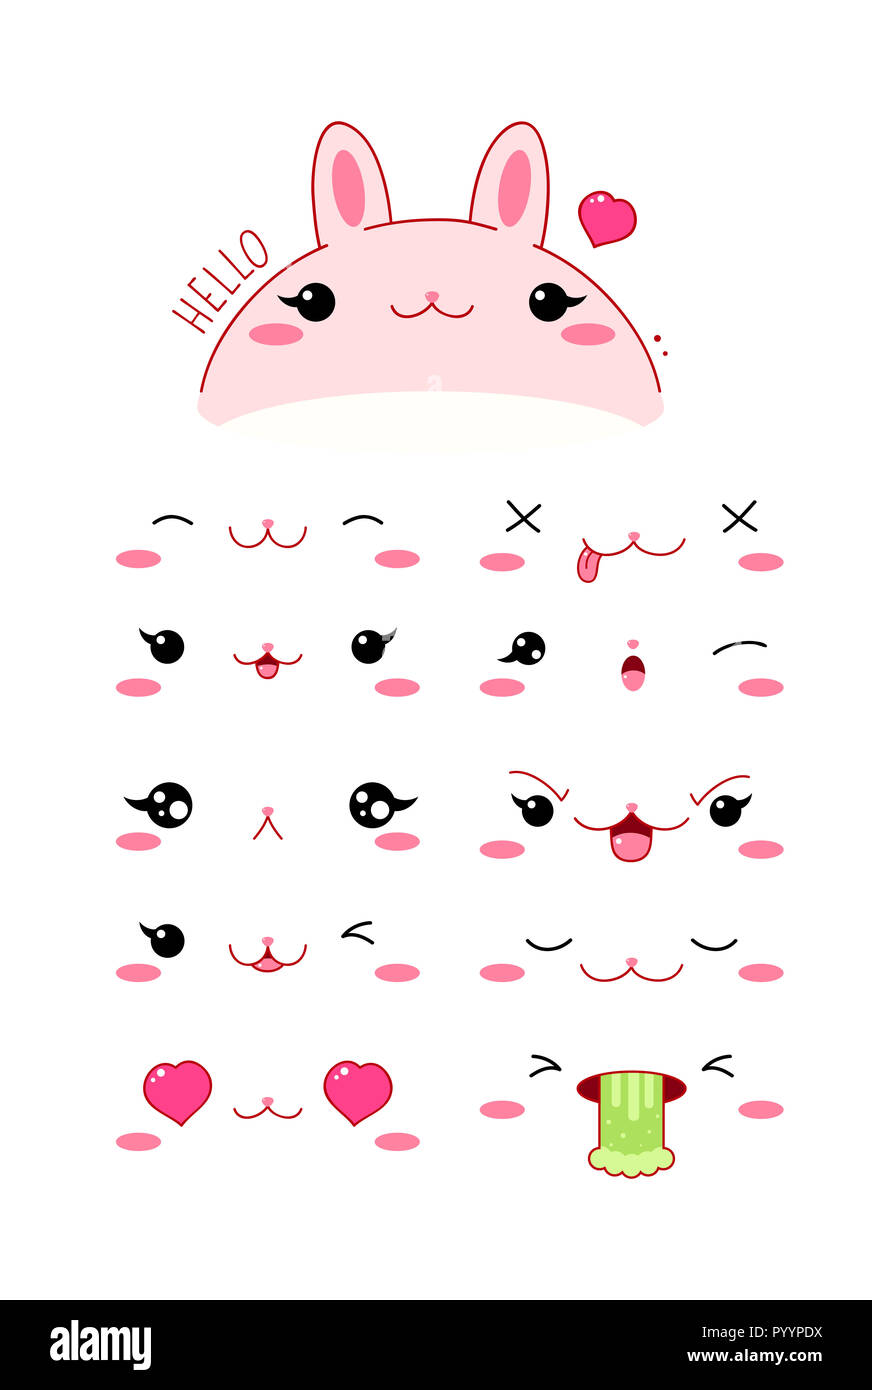 Lapin mignon drôle définir diverses émotions. Style Kawaii émoticone avec joues roses et des clins d'yeux. Spe8 Banque D'Images